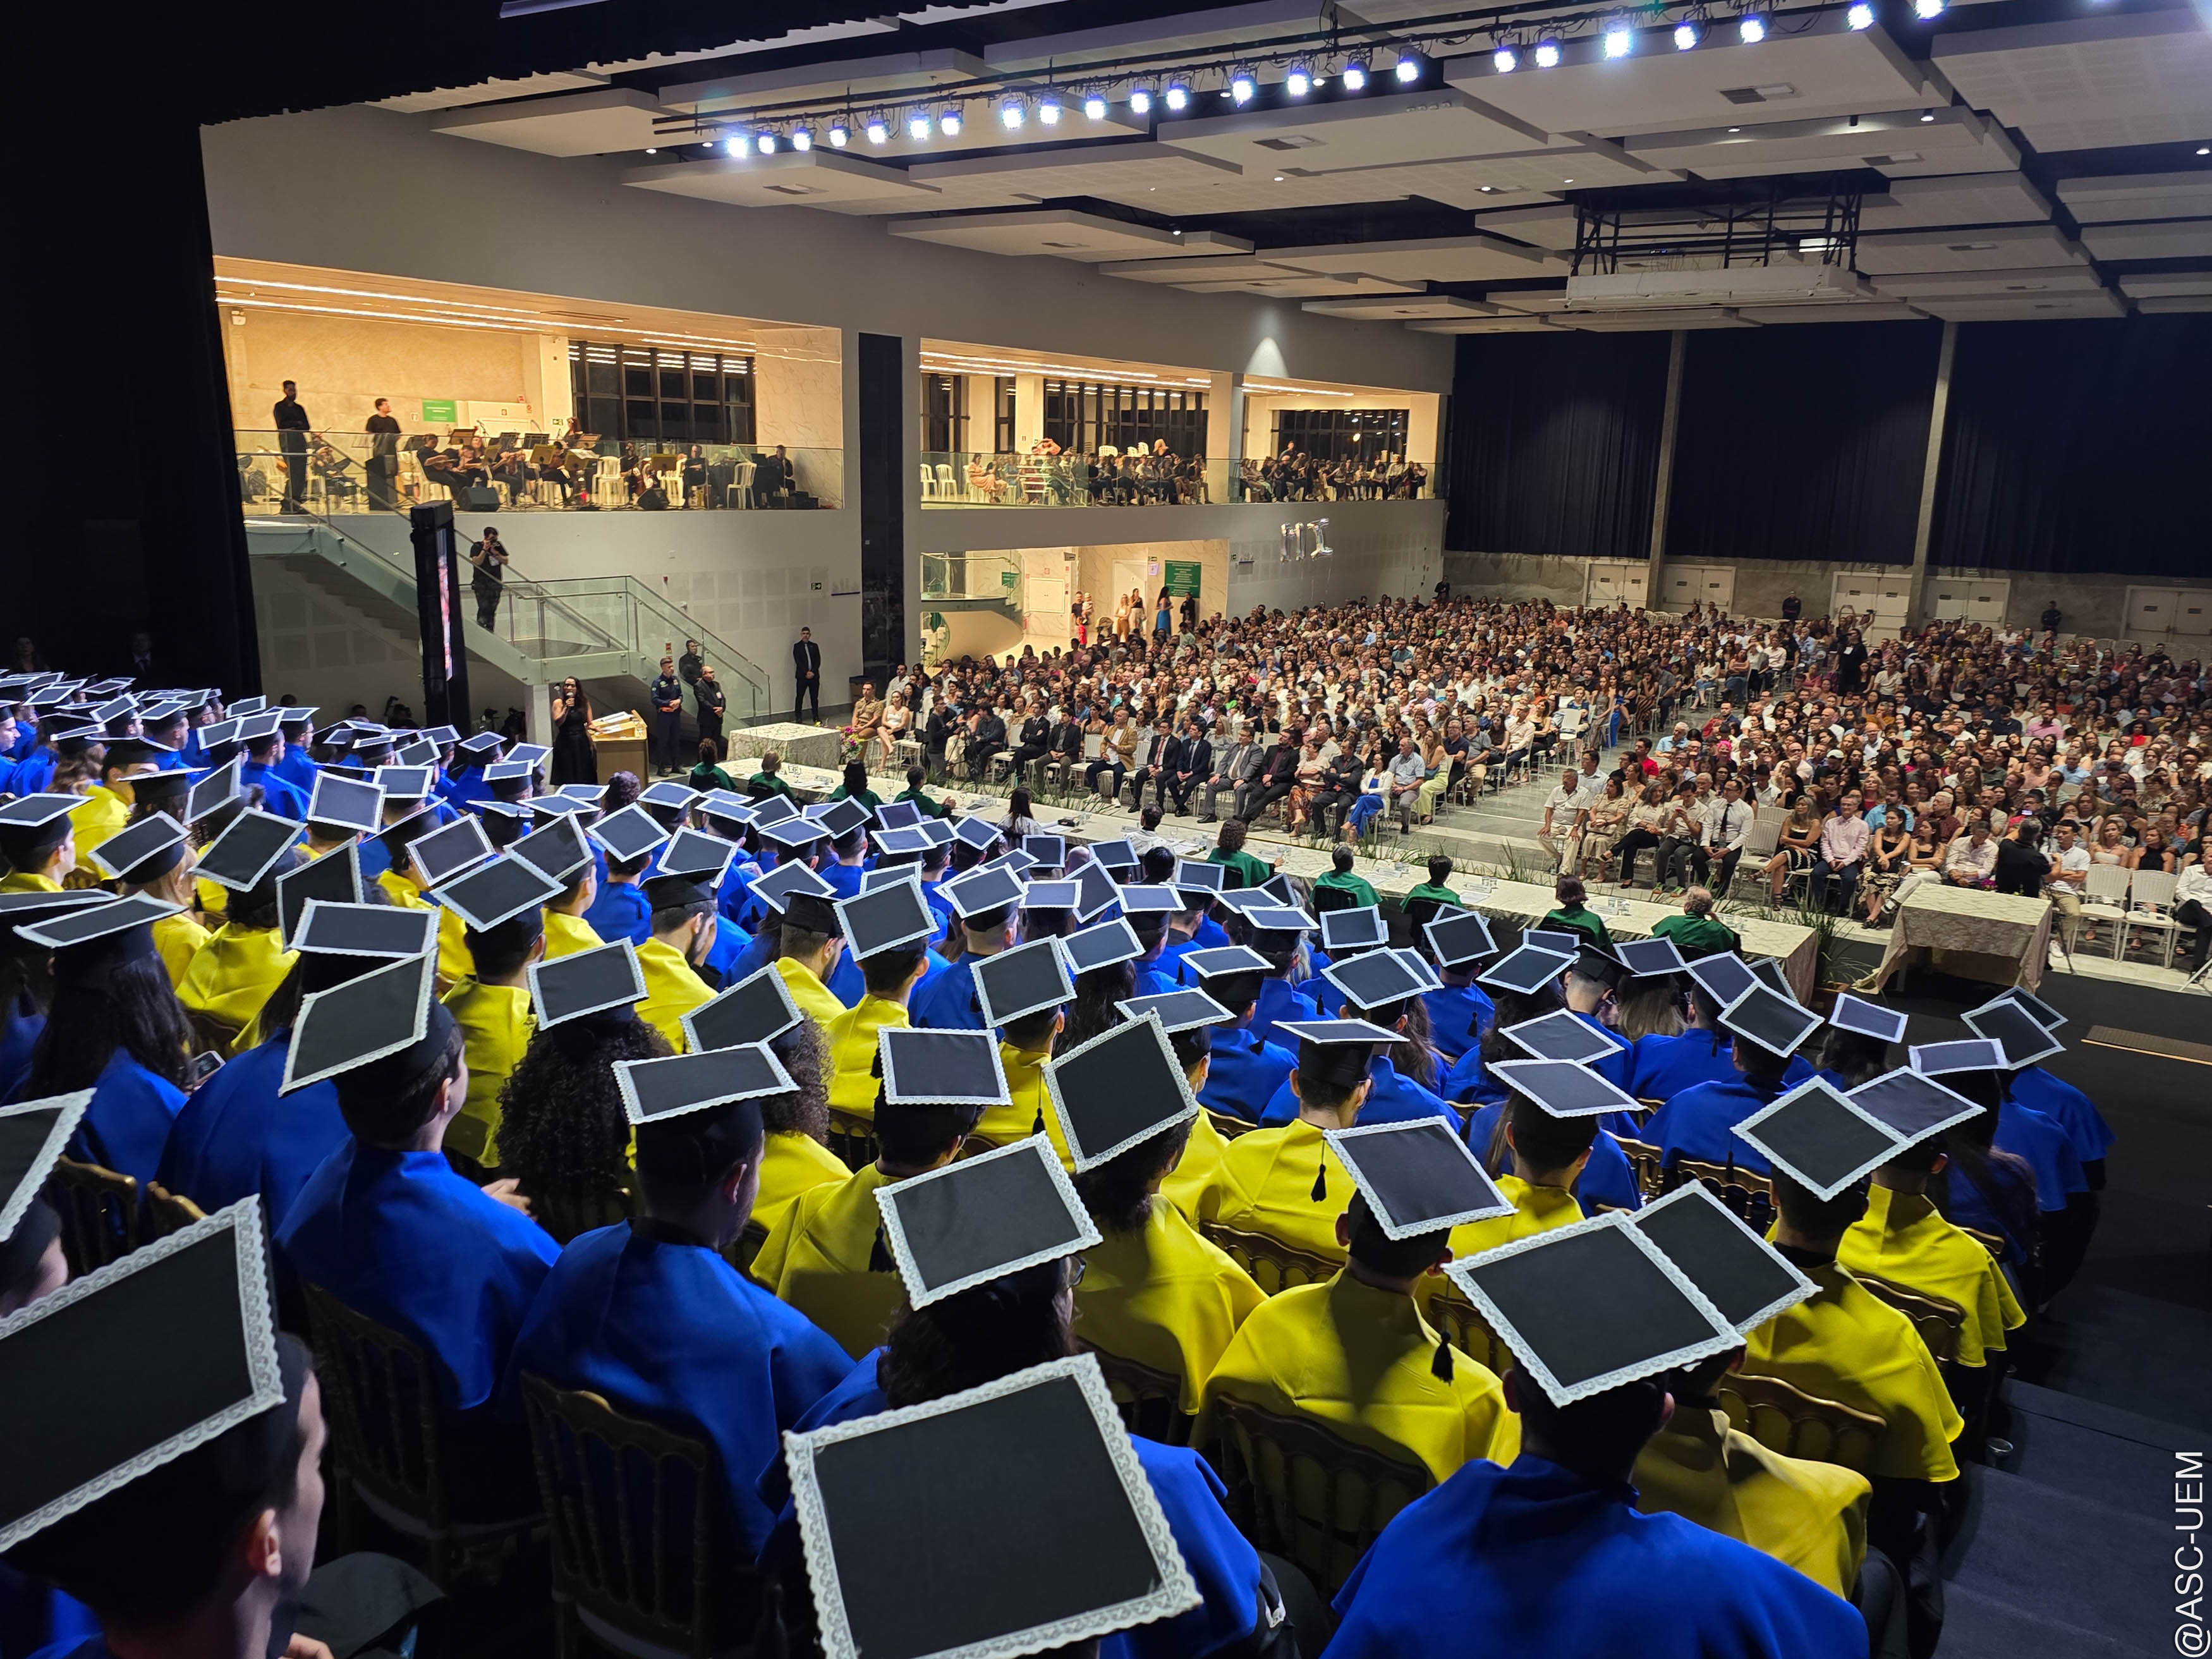 Foram entregues diplomas a 260 alunos dos cursos de Arquitetura, Ciência da Computação, Informática e Engenharias